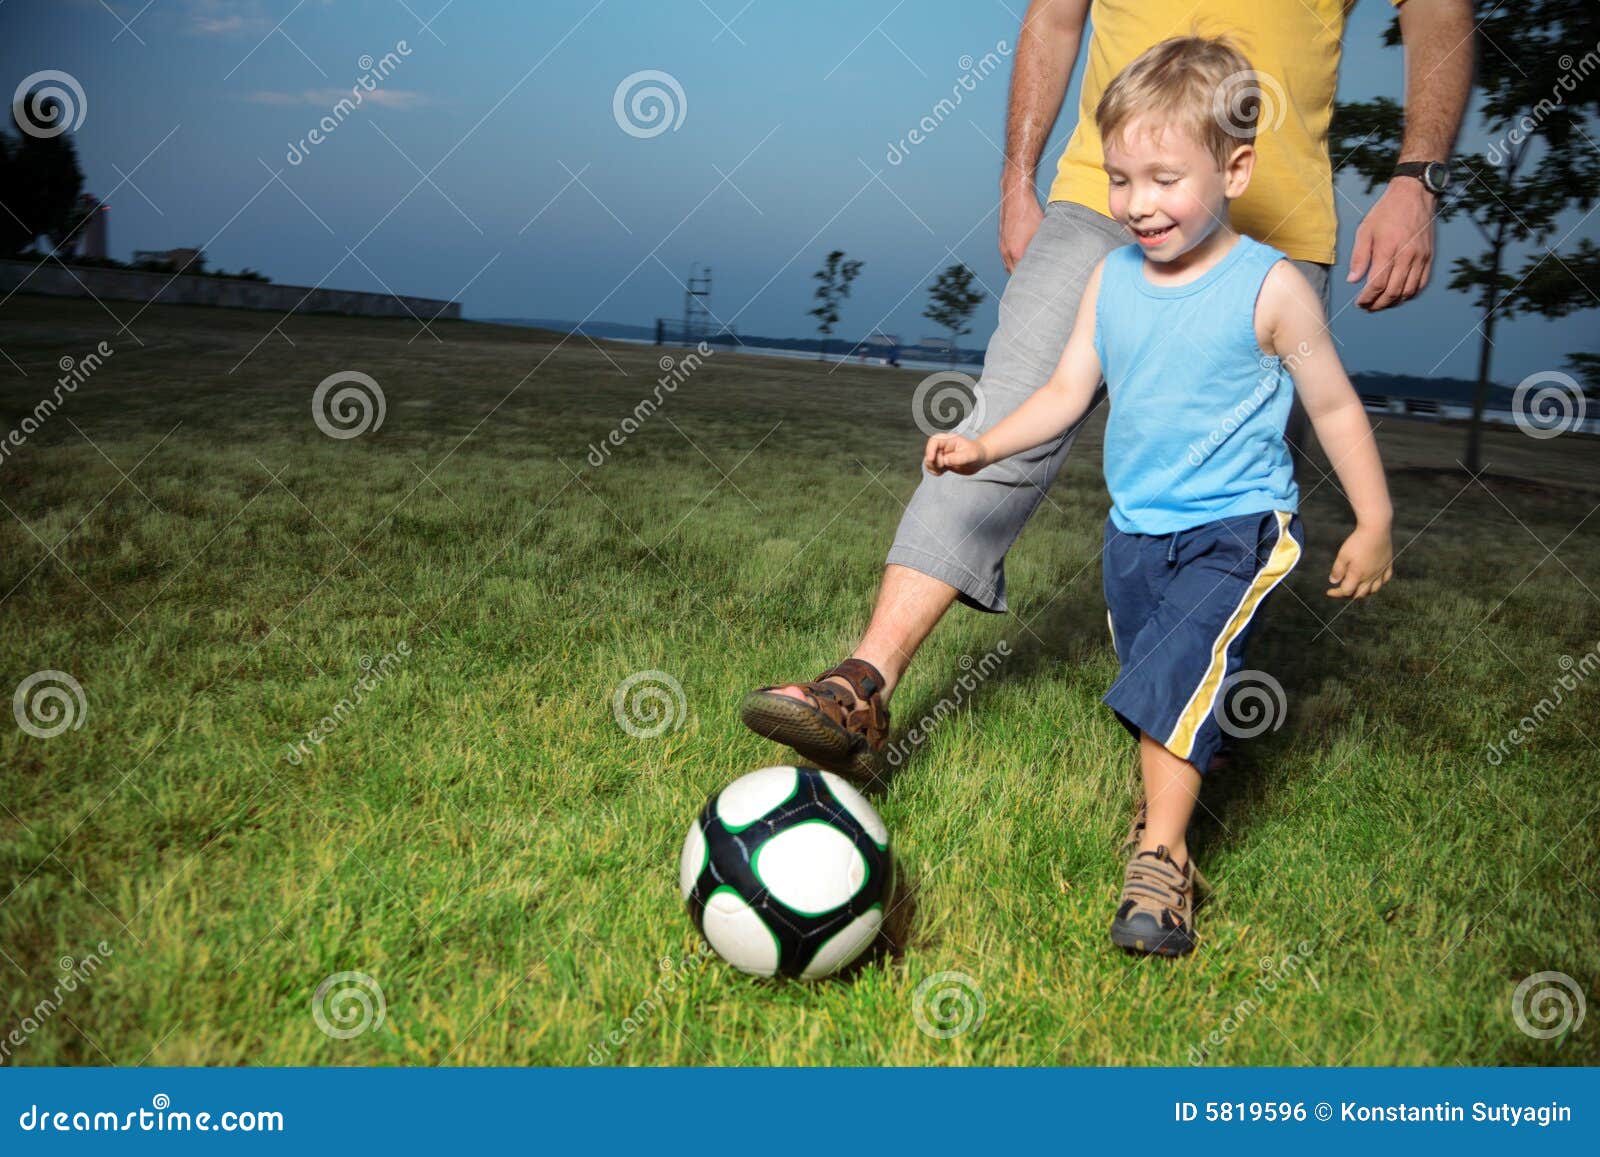 Давайте мальчики сыграем в футбол